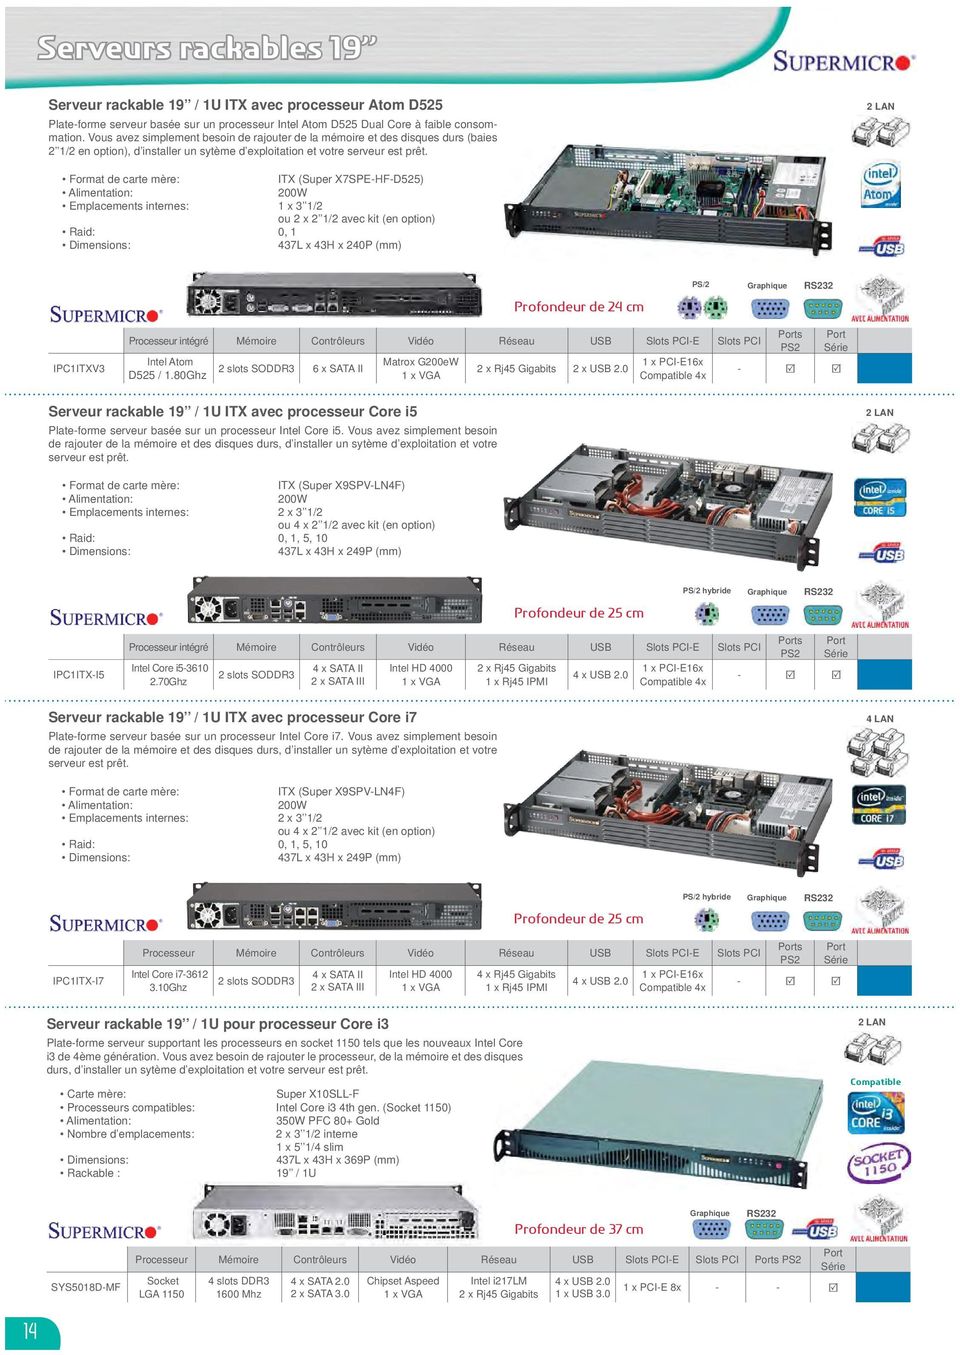 2 LAN Format de carte mère: ITX (Super X7SPE-HF-D525) Alimentation: 200W Emplacements internes: 1 x 3 1/2 ou 2 x 2 1/2 avec kit (en option) Raid: 0, 1 Dimensions: 437L x 43H x 240P (mm) Profondeur de